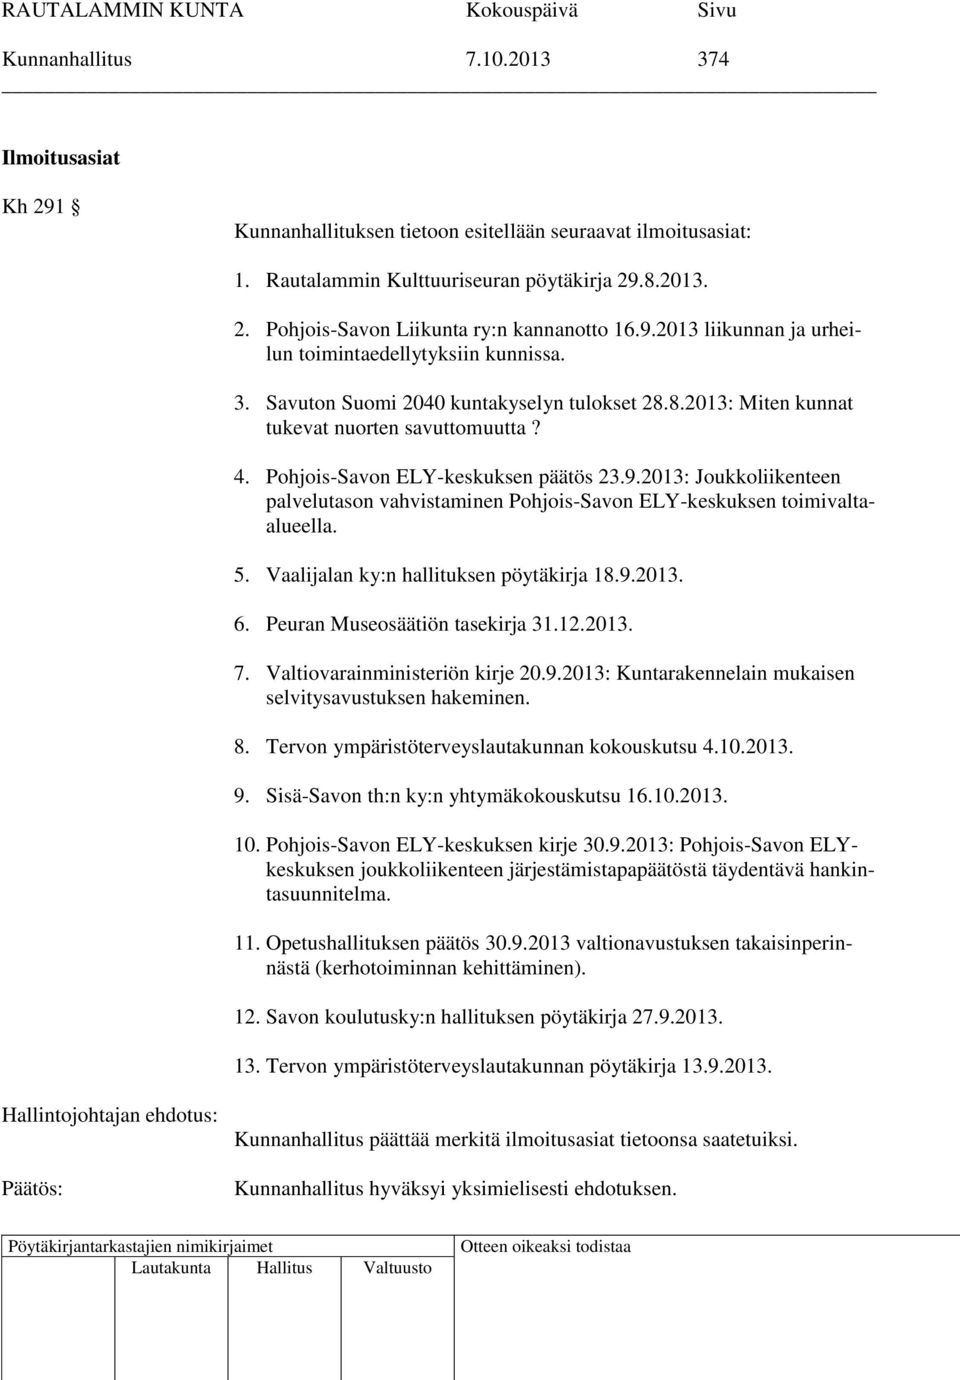 Pohjois-Savon ELY-keskuksen päätös 23.9.2013: Joukkoliikenteen palvelutason vahvistaminen Pohjois-Savon ELY-keskuksen toimivaltaalueella. 5. Vaalijalan ky:n hallituksen pöytäkirja 18.9.2013. 6.